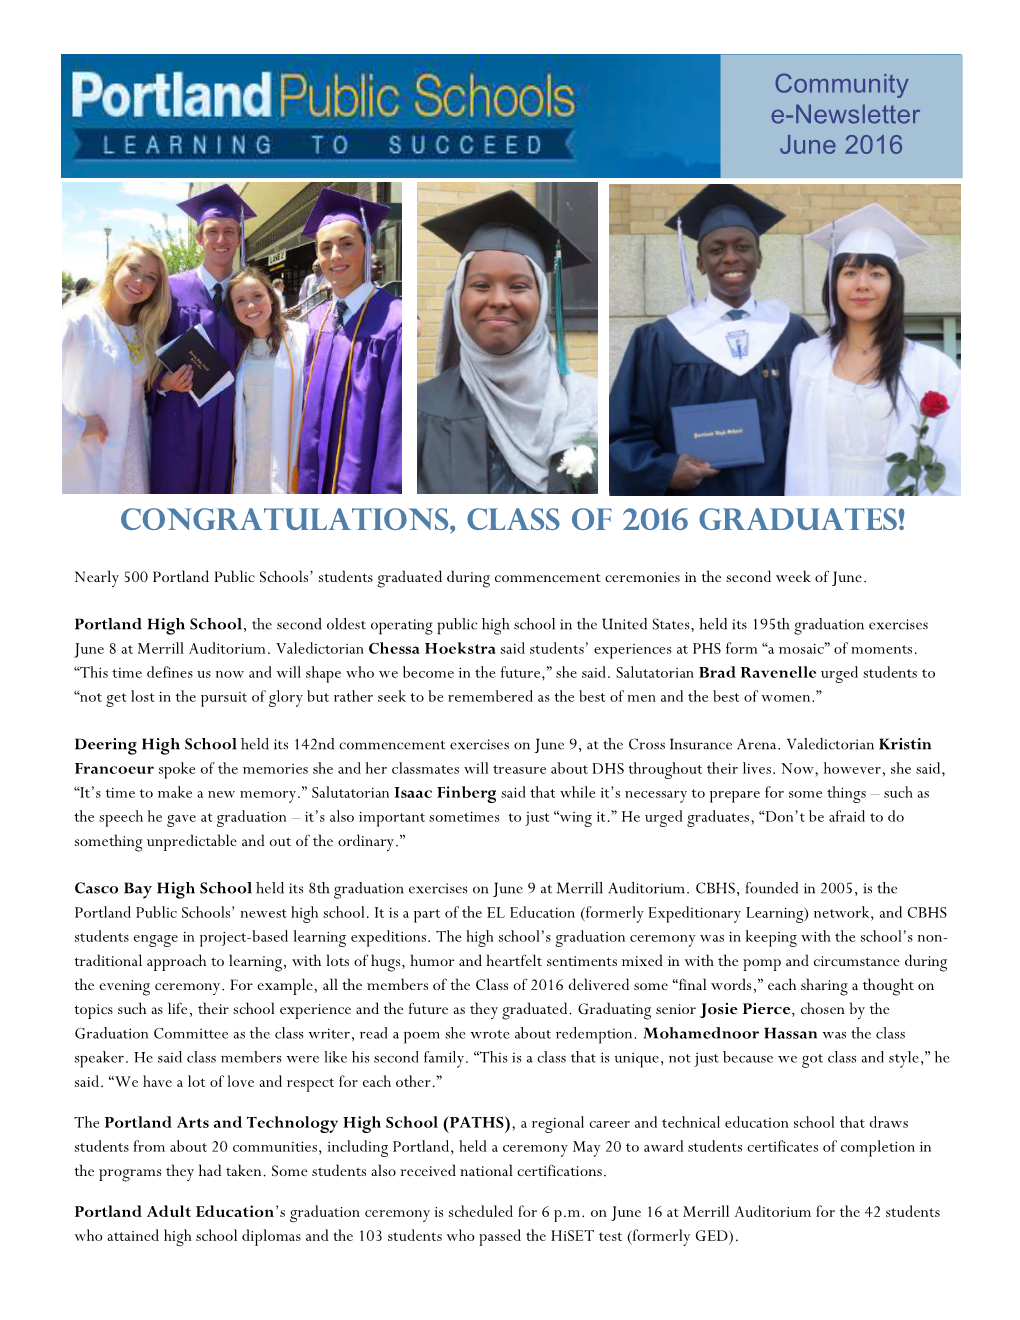 Congratulations, Class of 2016 Graduates!